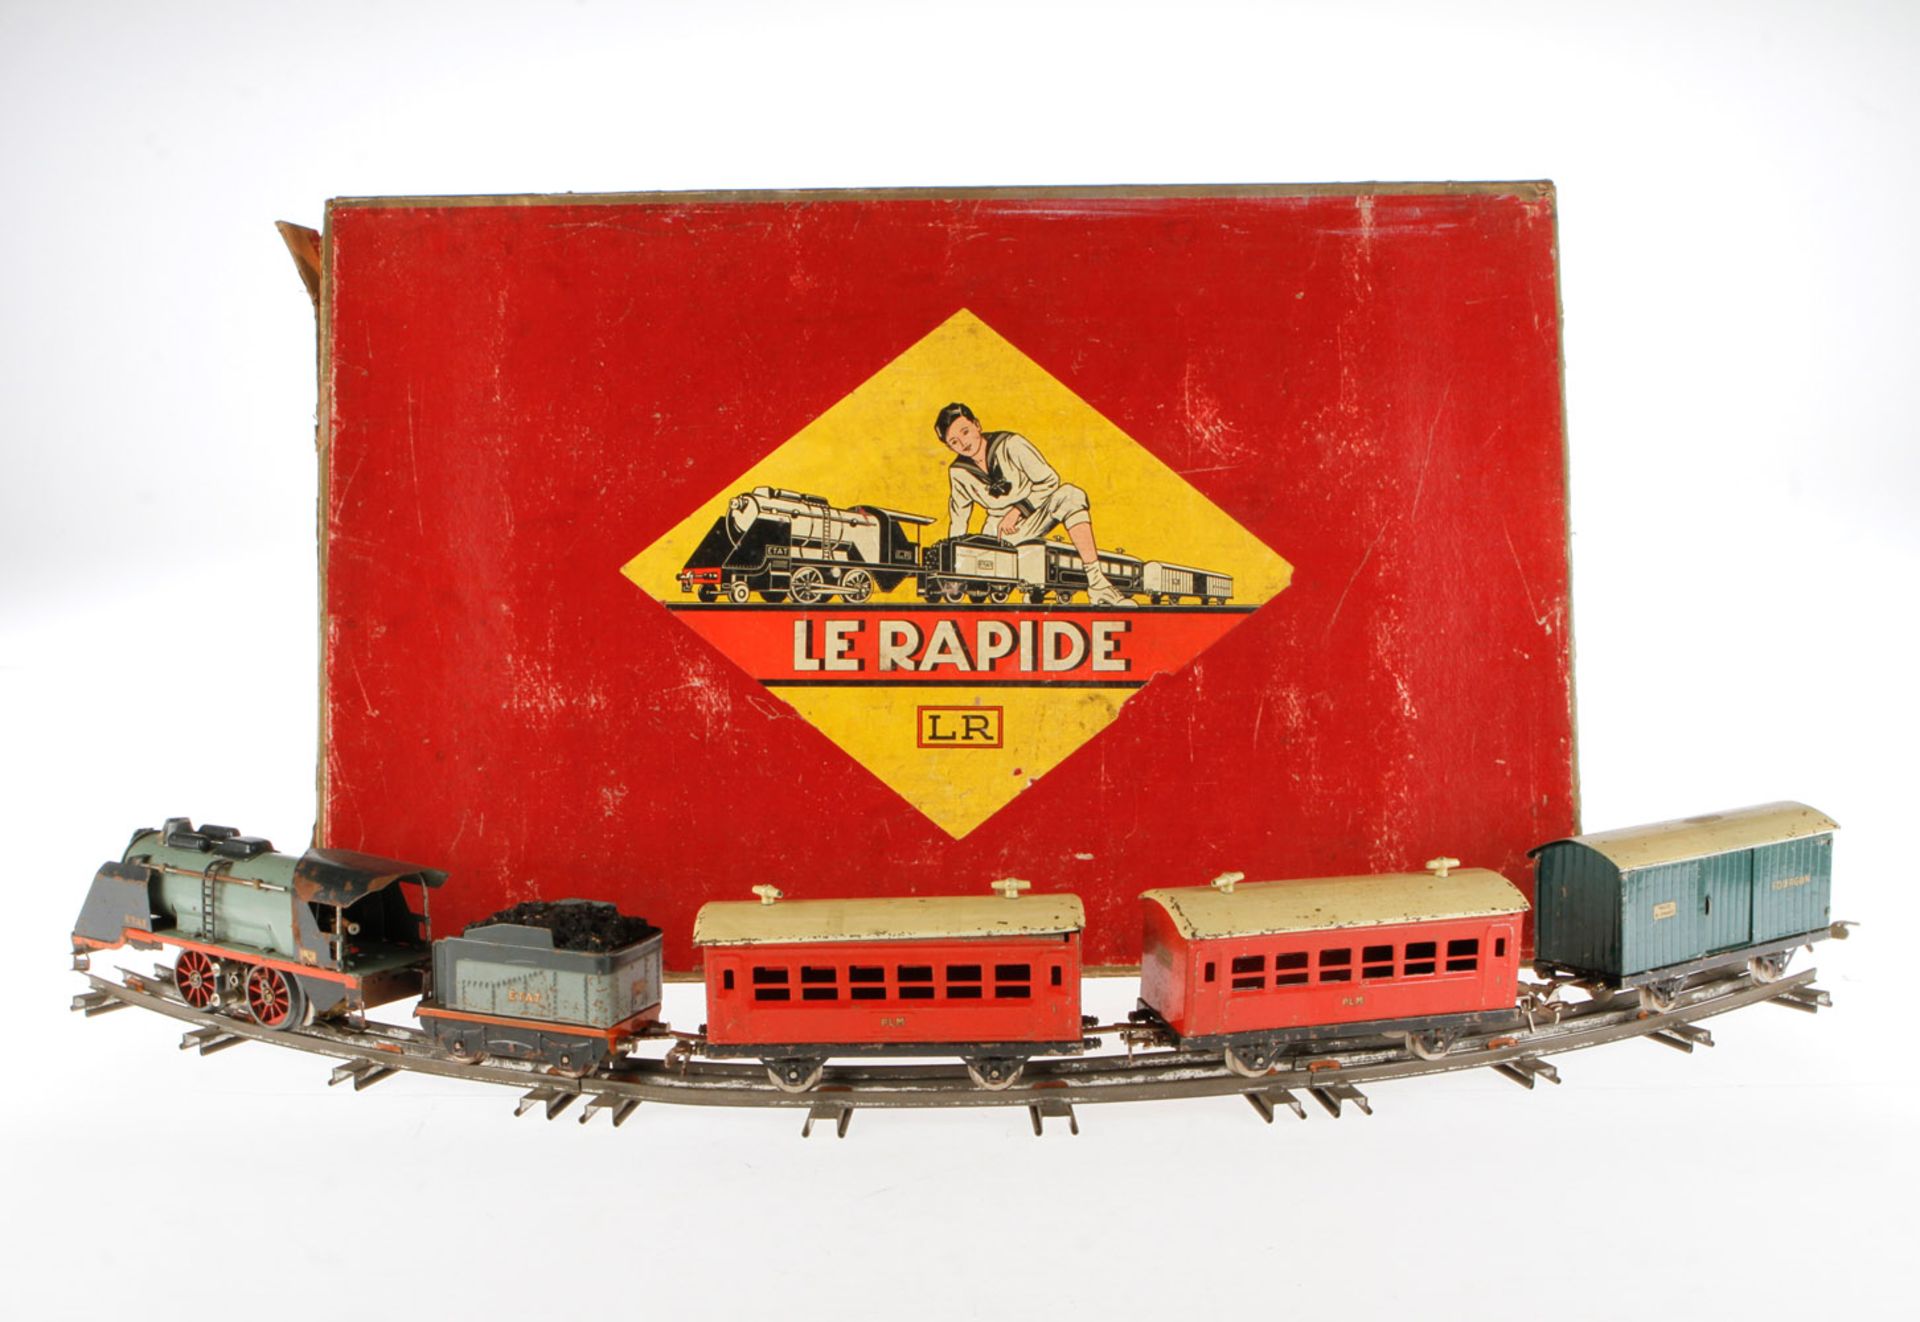 LR Zugpackung "Le Rapide", S 0, elektr., mit Lok, Tender, 3 Wagen, Trafo und Schienen, LS/RS,